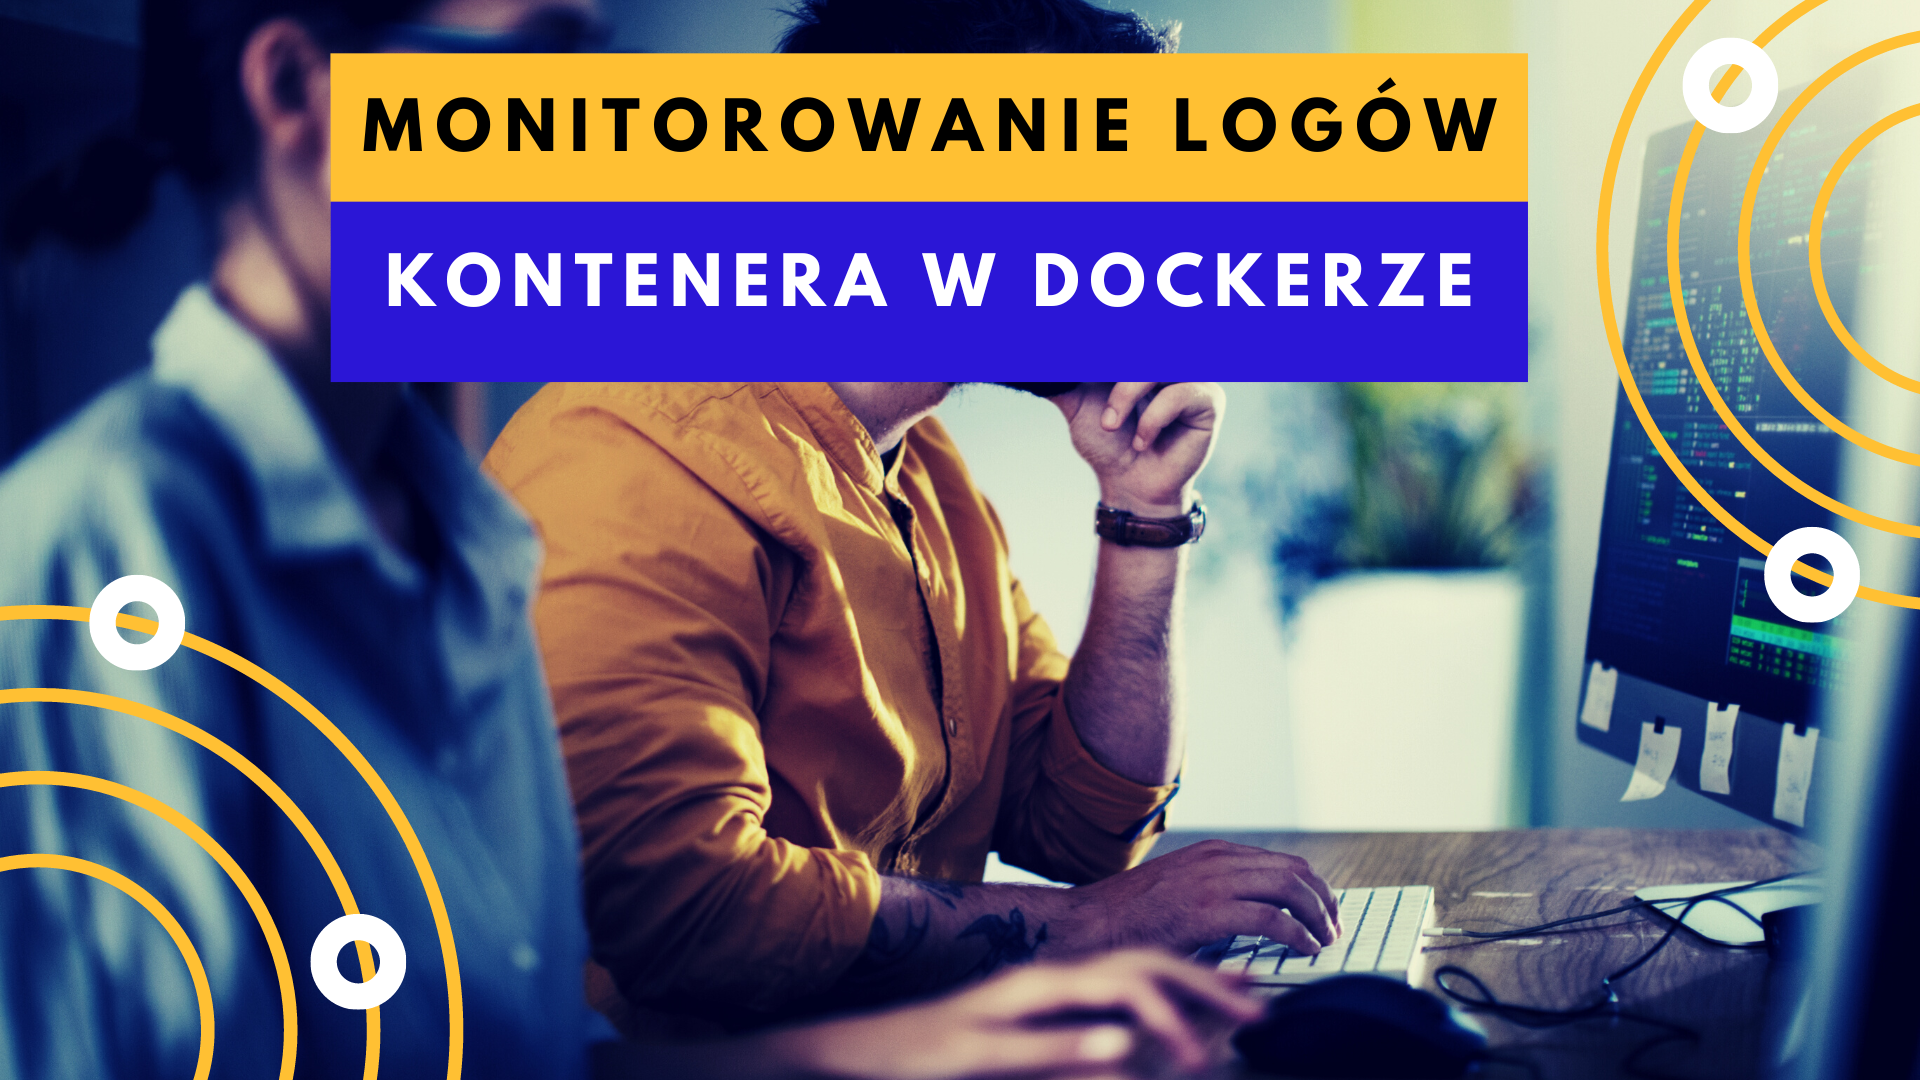 Docker - monitorowanie logów kontenera